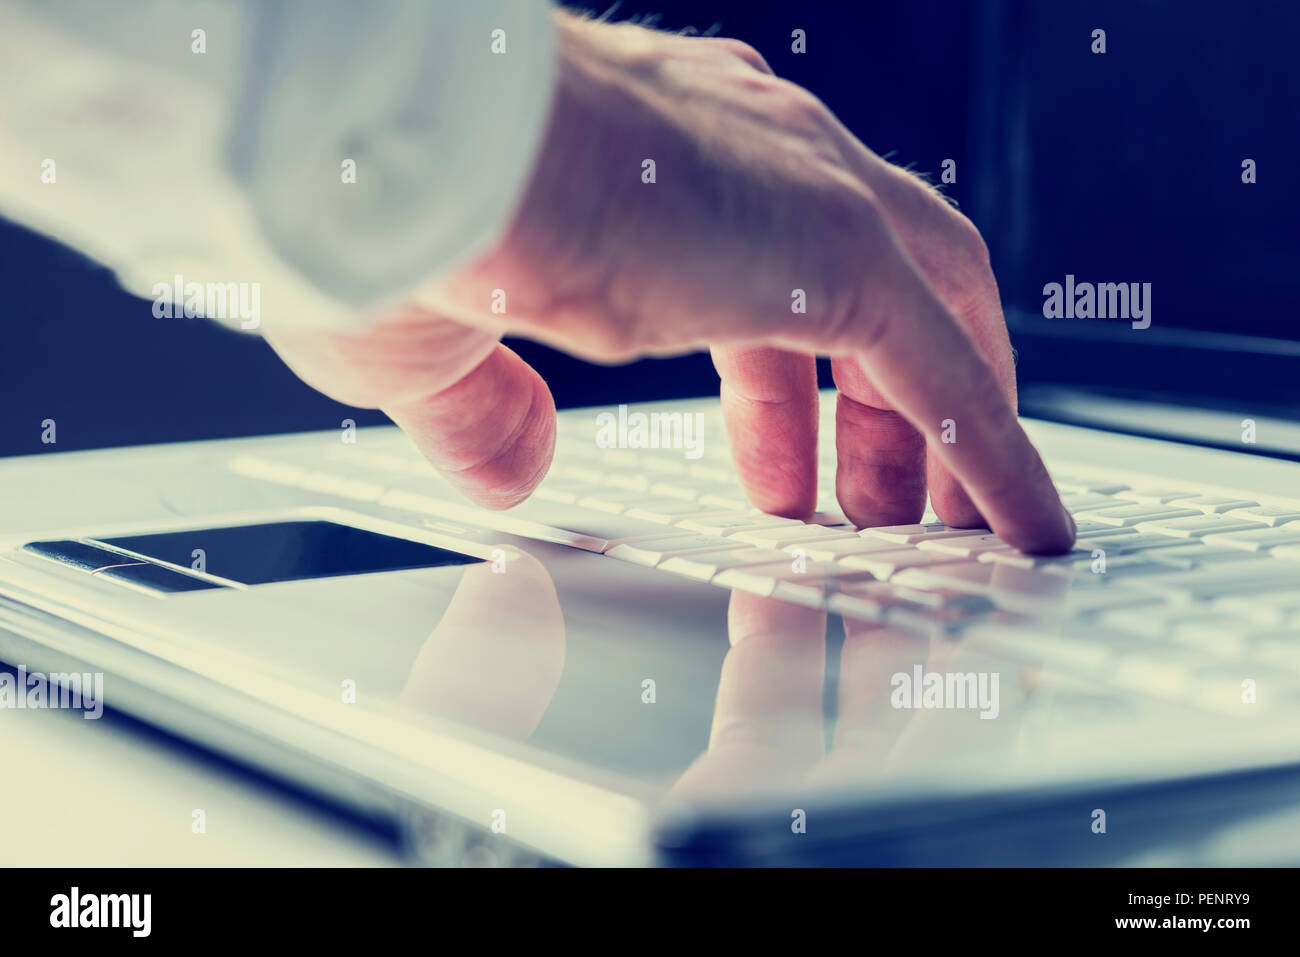 Primo piano delle mani di un uomo digitando su una tastiera portatile come egli immette informazioni o naviga su Internet in una comunicazione online e contattare concep Foto Stock